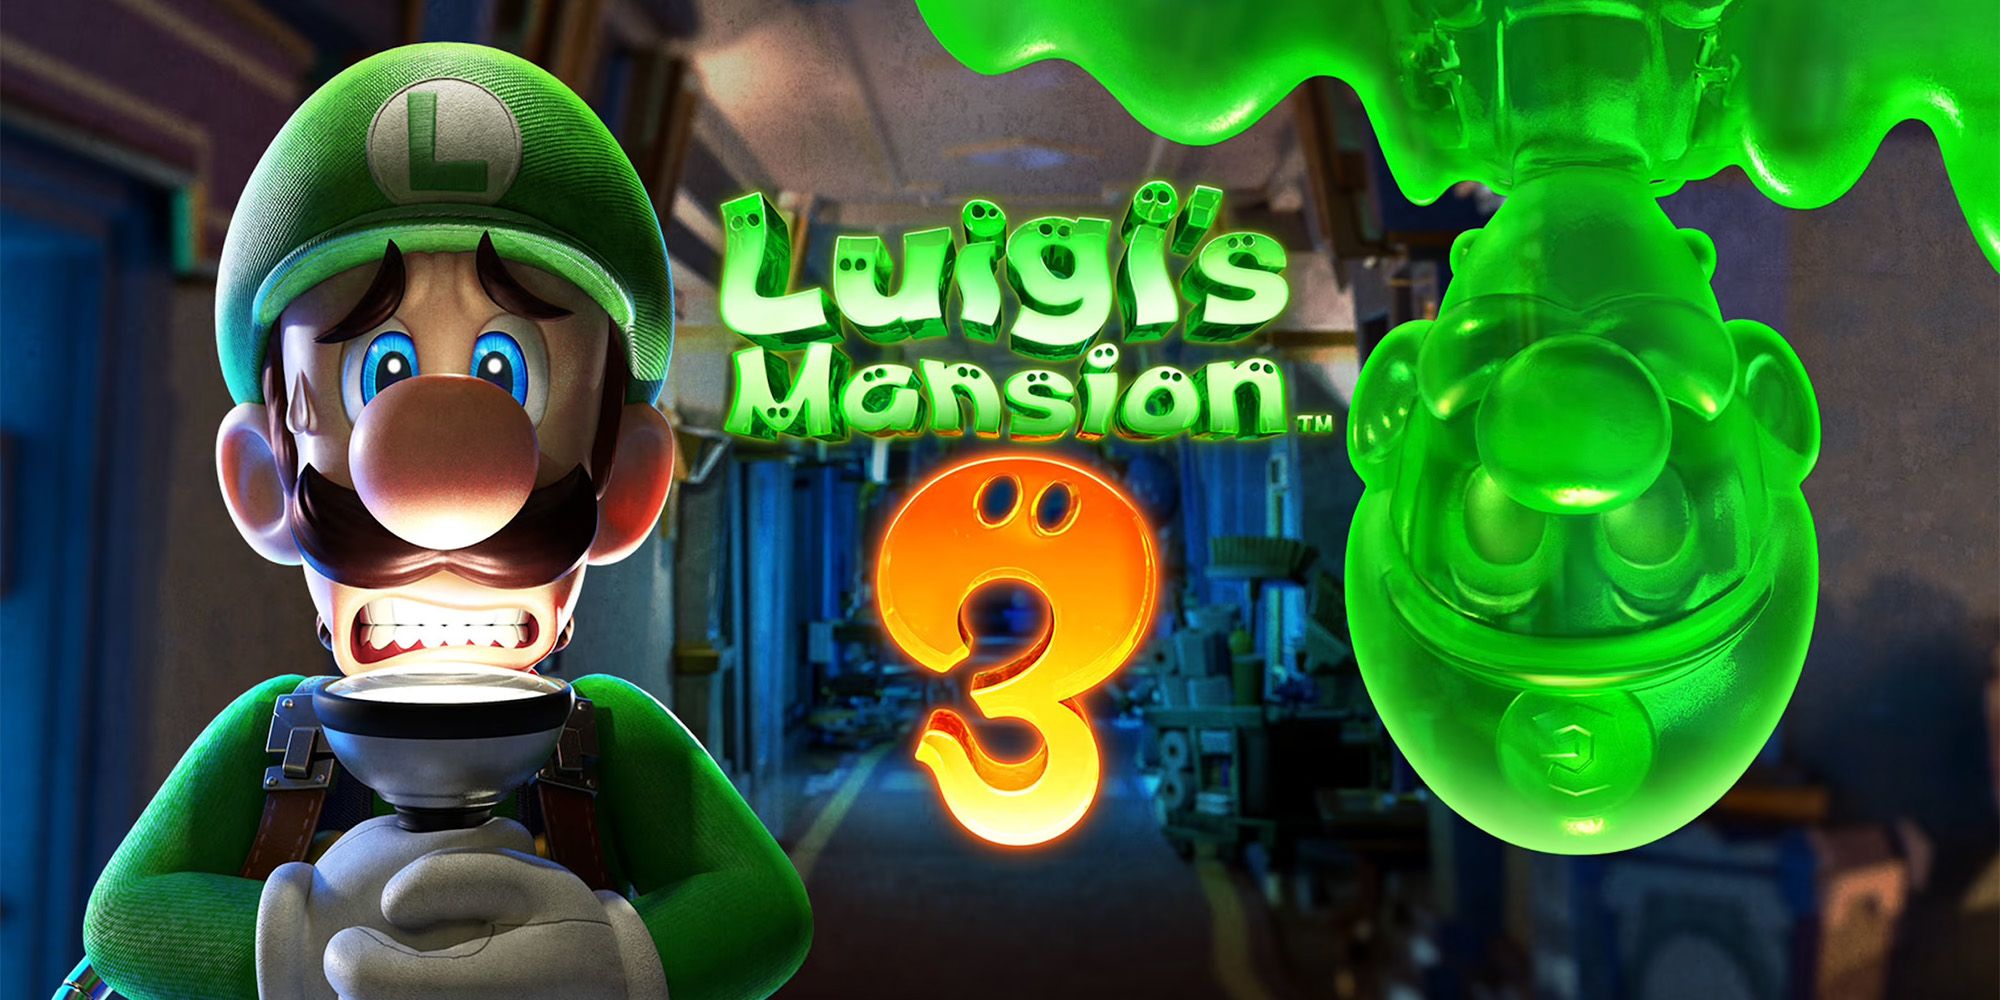 Luigi's Mansion 3 - Luigi and Gooigi standing in a dark hallway